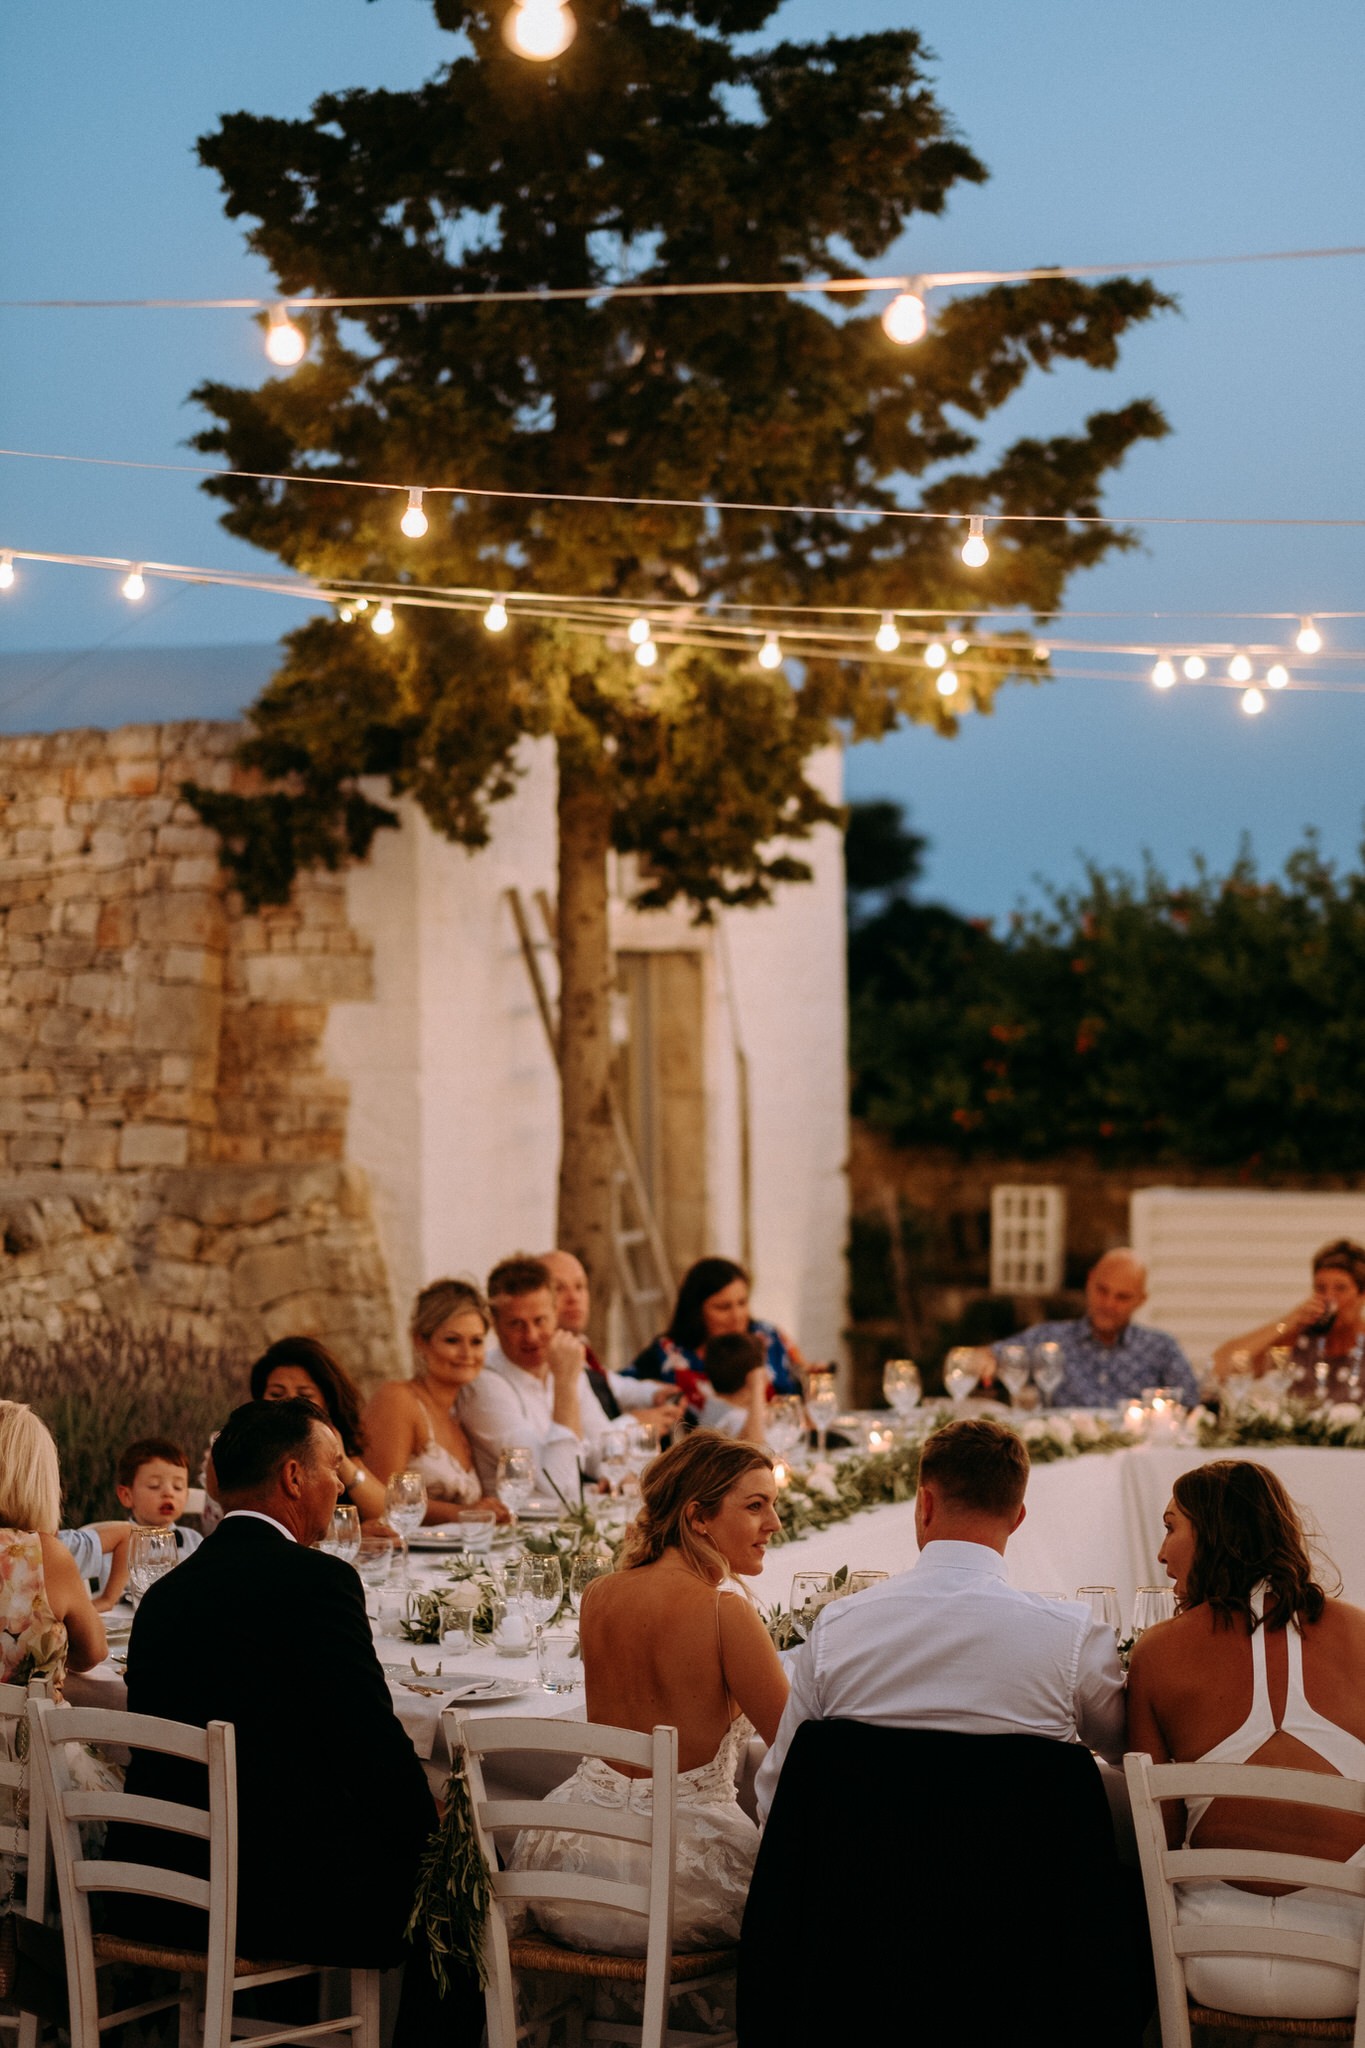 Reception - Wedding in Apulia, Italy - 35mm